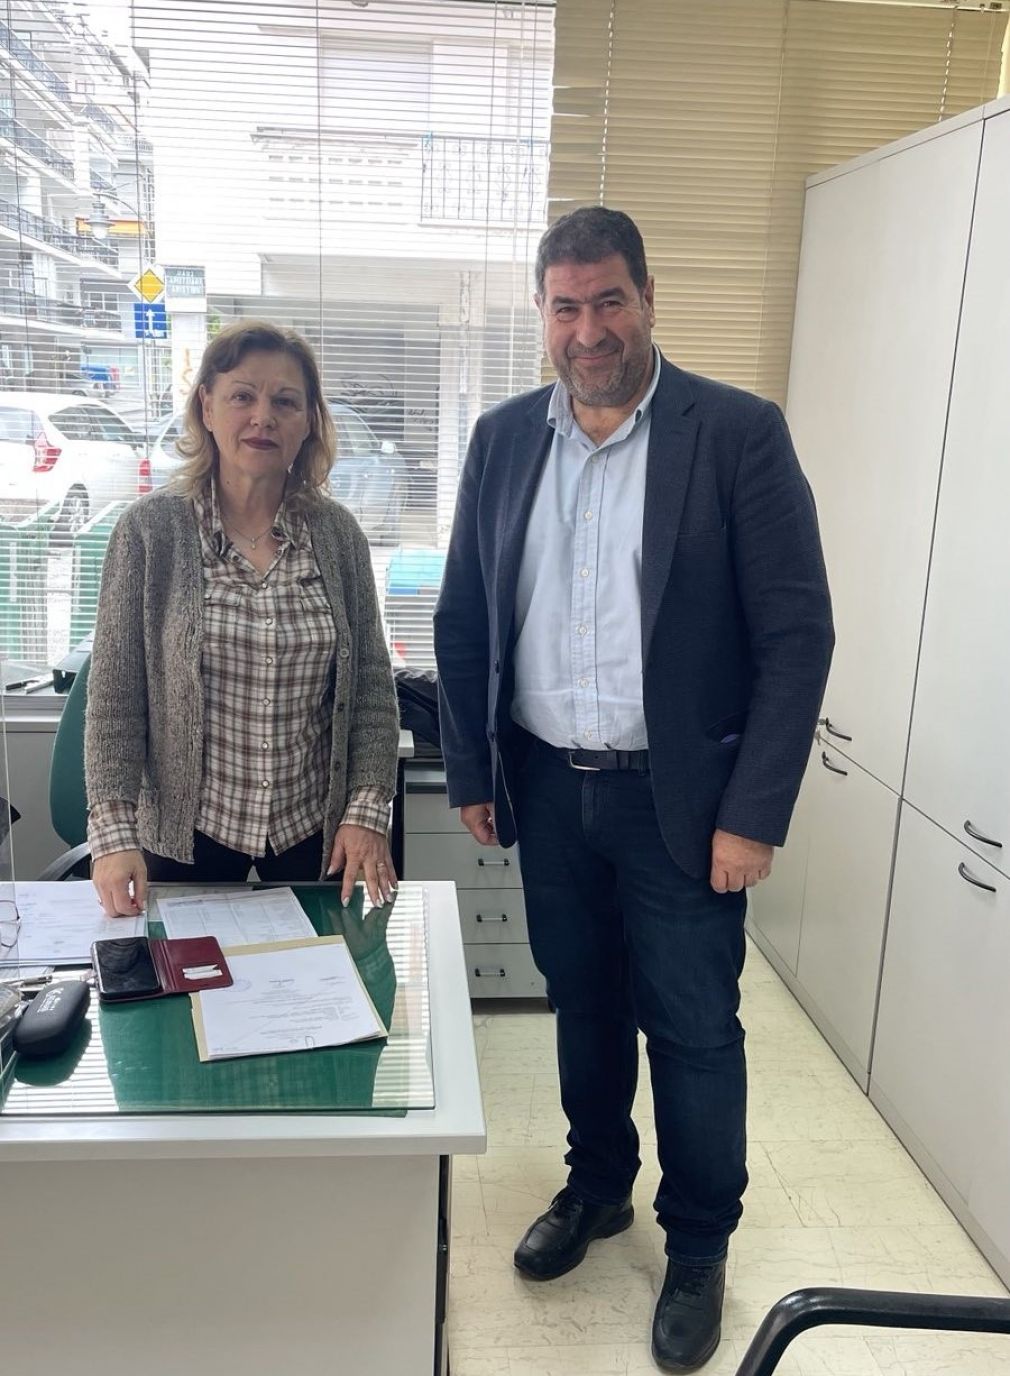 Επισκέψεις του υποψηφίου βουλευτή της ΝΔ  Θανάση Σταυρόπουλου σε δημόσιες υπηρεσίες